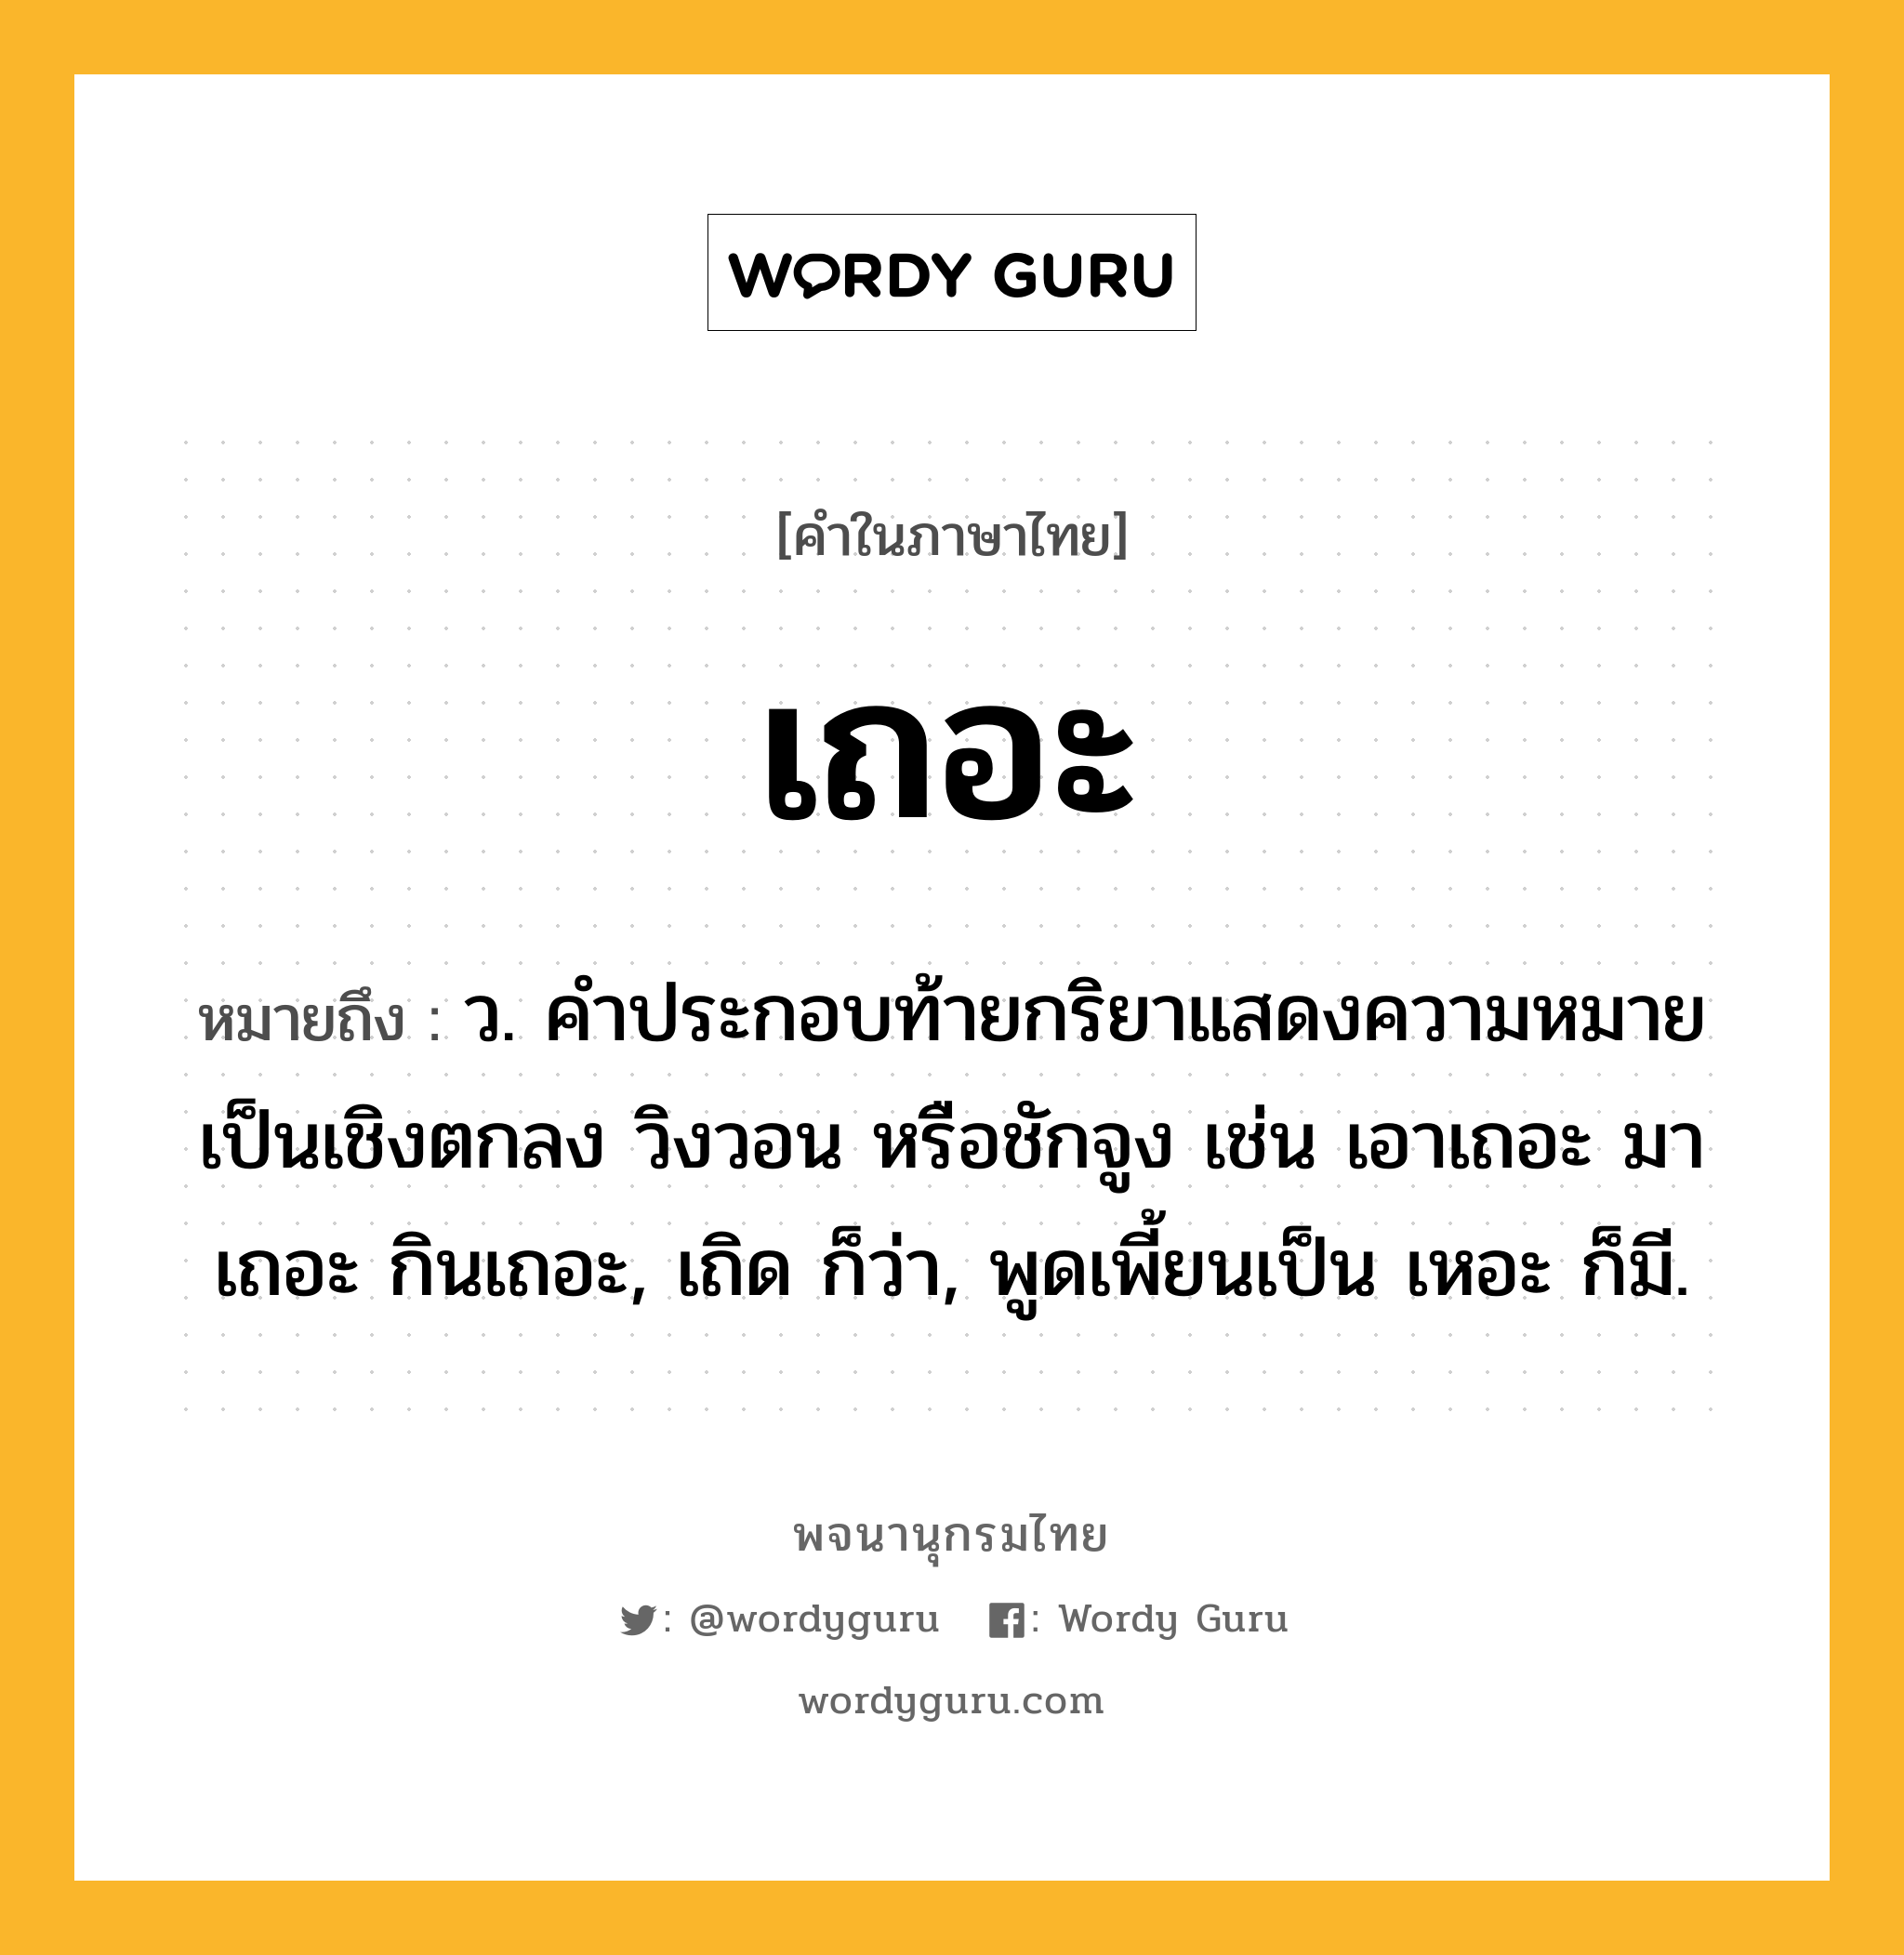 เถอะ หมายถึงอะไร?, คำในภาษาไทย เถอะ หมายถึง ว. คําประกอบท้ายกริยาแสดงความหมายเป็นเชิงตกลง วิงวอน หรือชักจูง เช่น เอาเถอะ มาเถอะ กินเถอะ, เถิด ก็ว่า, พูดเพี้ยนเป็น เหอะ ก็มี.